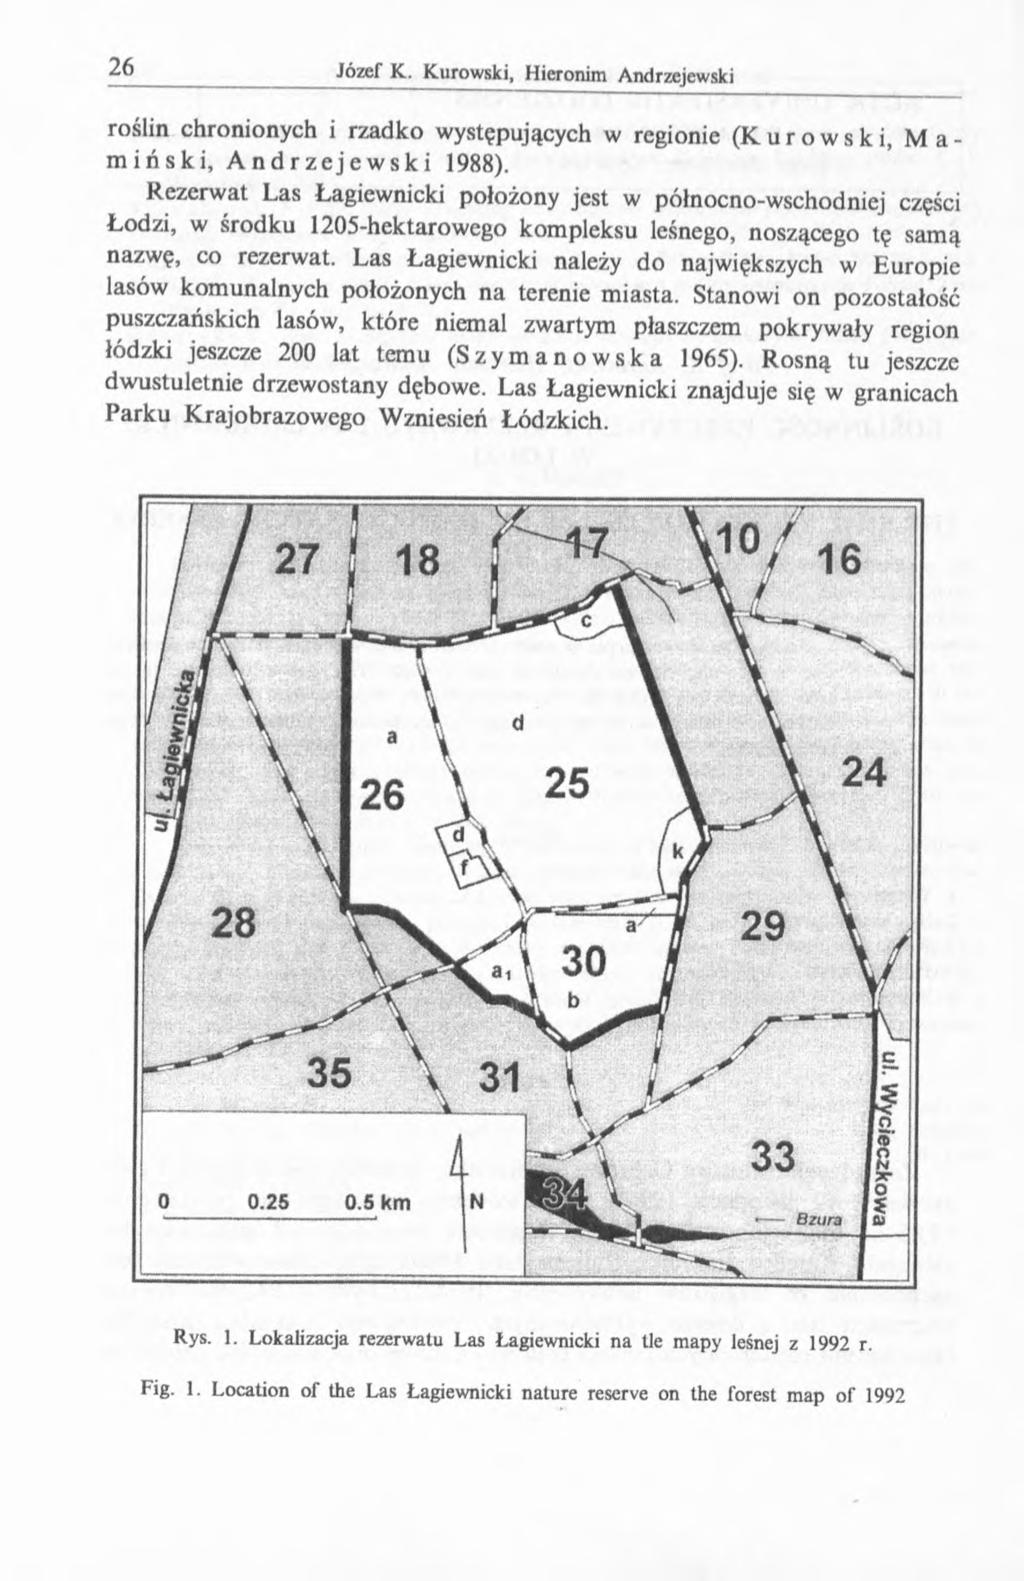 roślin chronionych i rzadko występujących w regionie (Kurowski, Mamiński, Andrzejewski 1988).